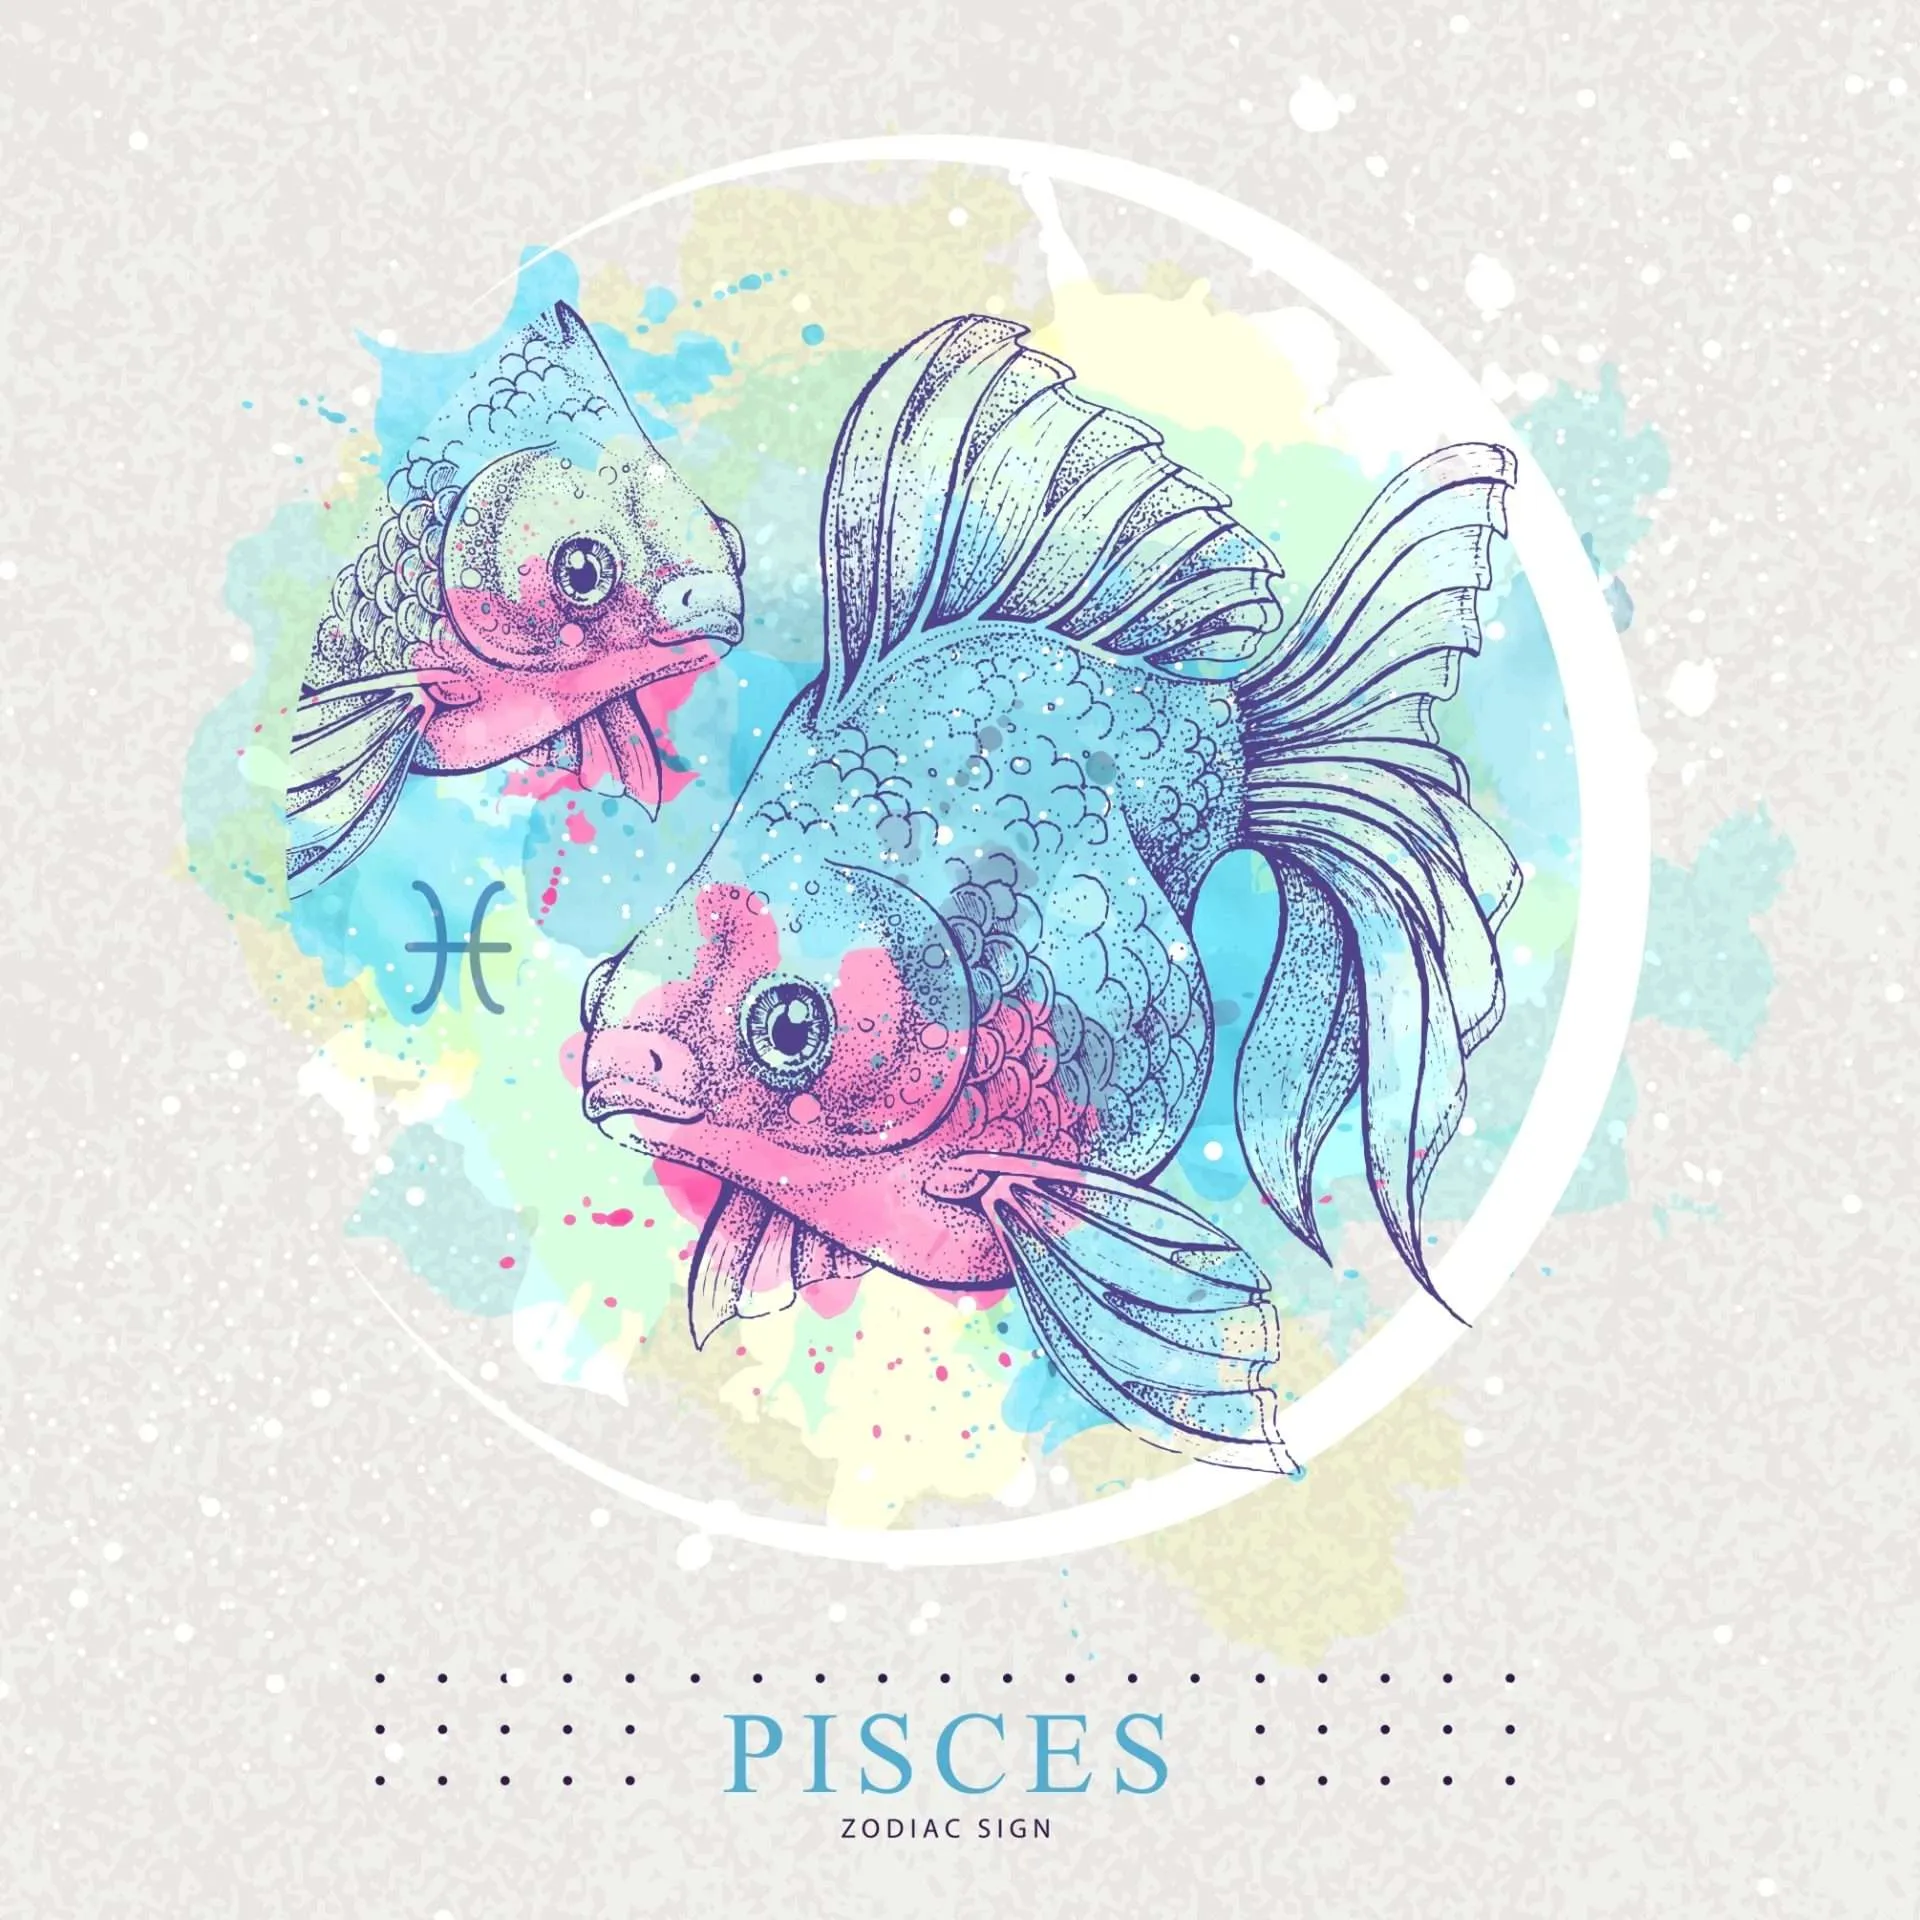 Pisces Signature Sign